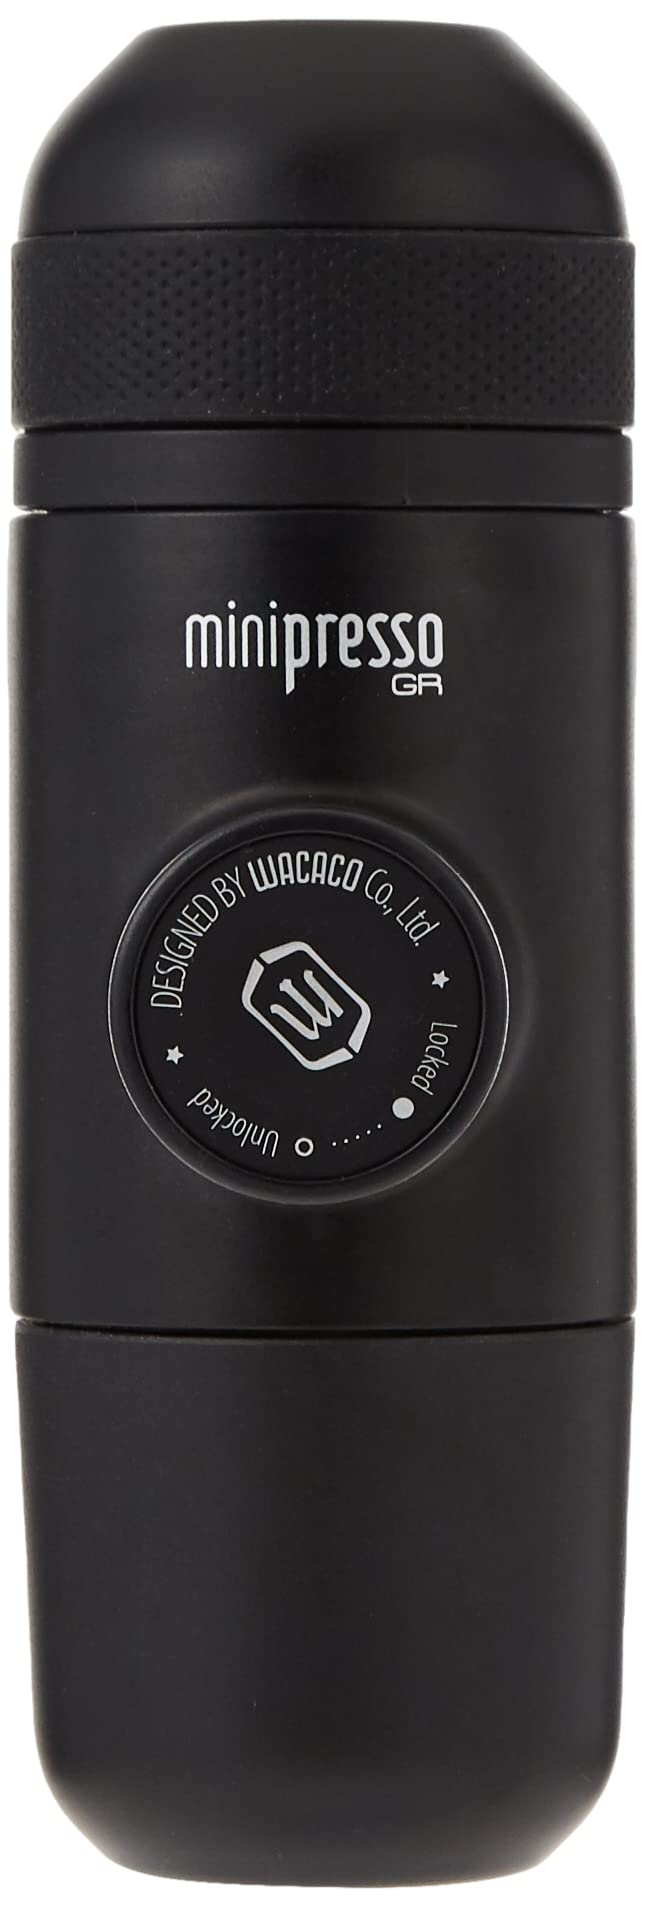 Wacaco Minipresso GR tragbare Espressomaschine